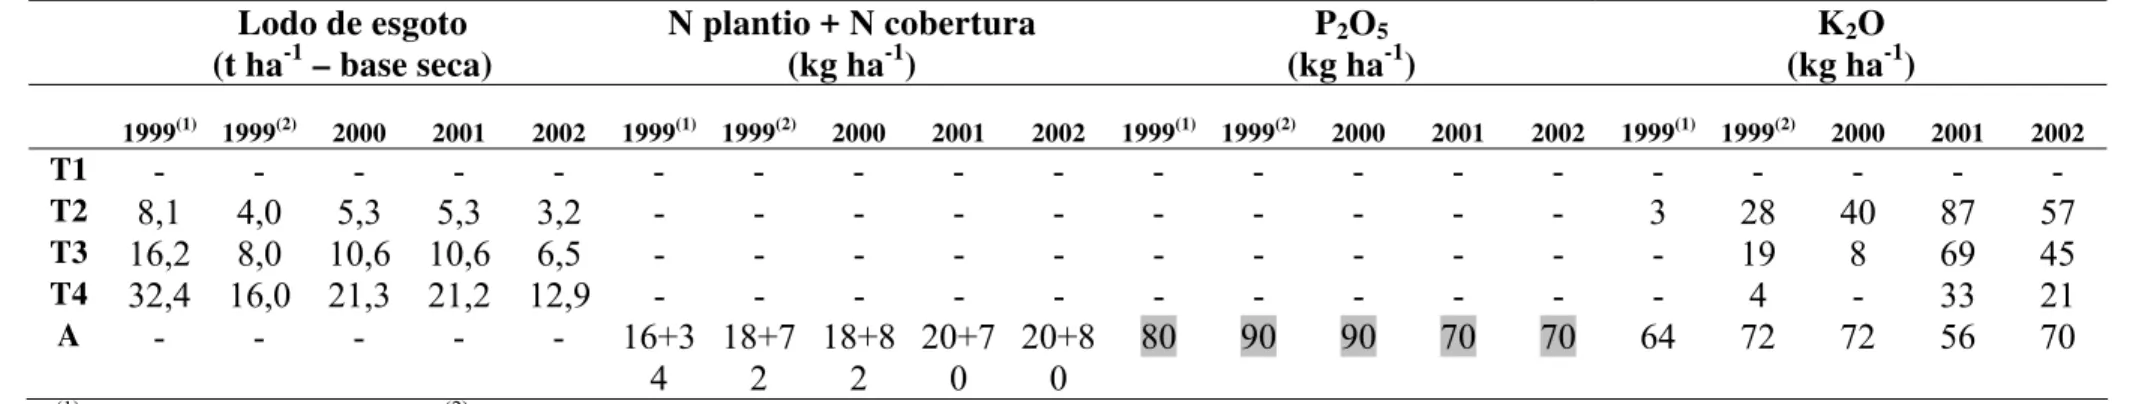 Tabela 7 - Identificação dos tratamentos e quantidades de fósforo aplicadas no ensaio referentes a quinta aplicação de lodo, ou seja,  referente a aplicação do ano de 2002 ou coleta de 2003